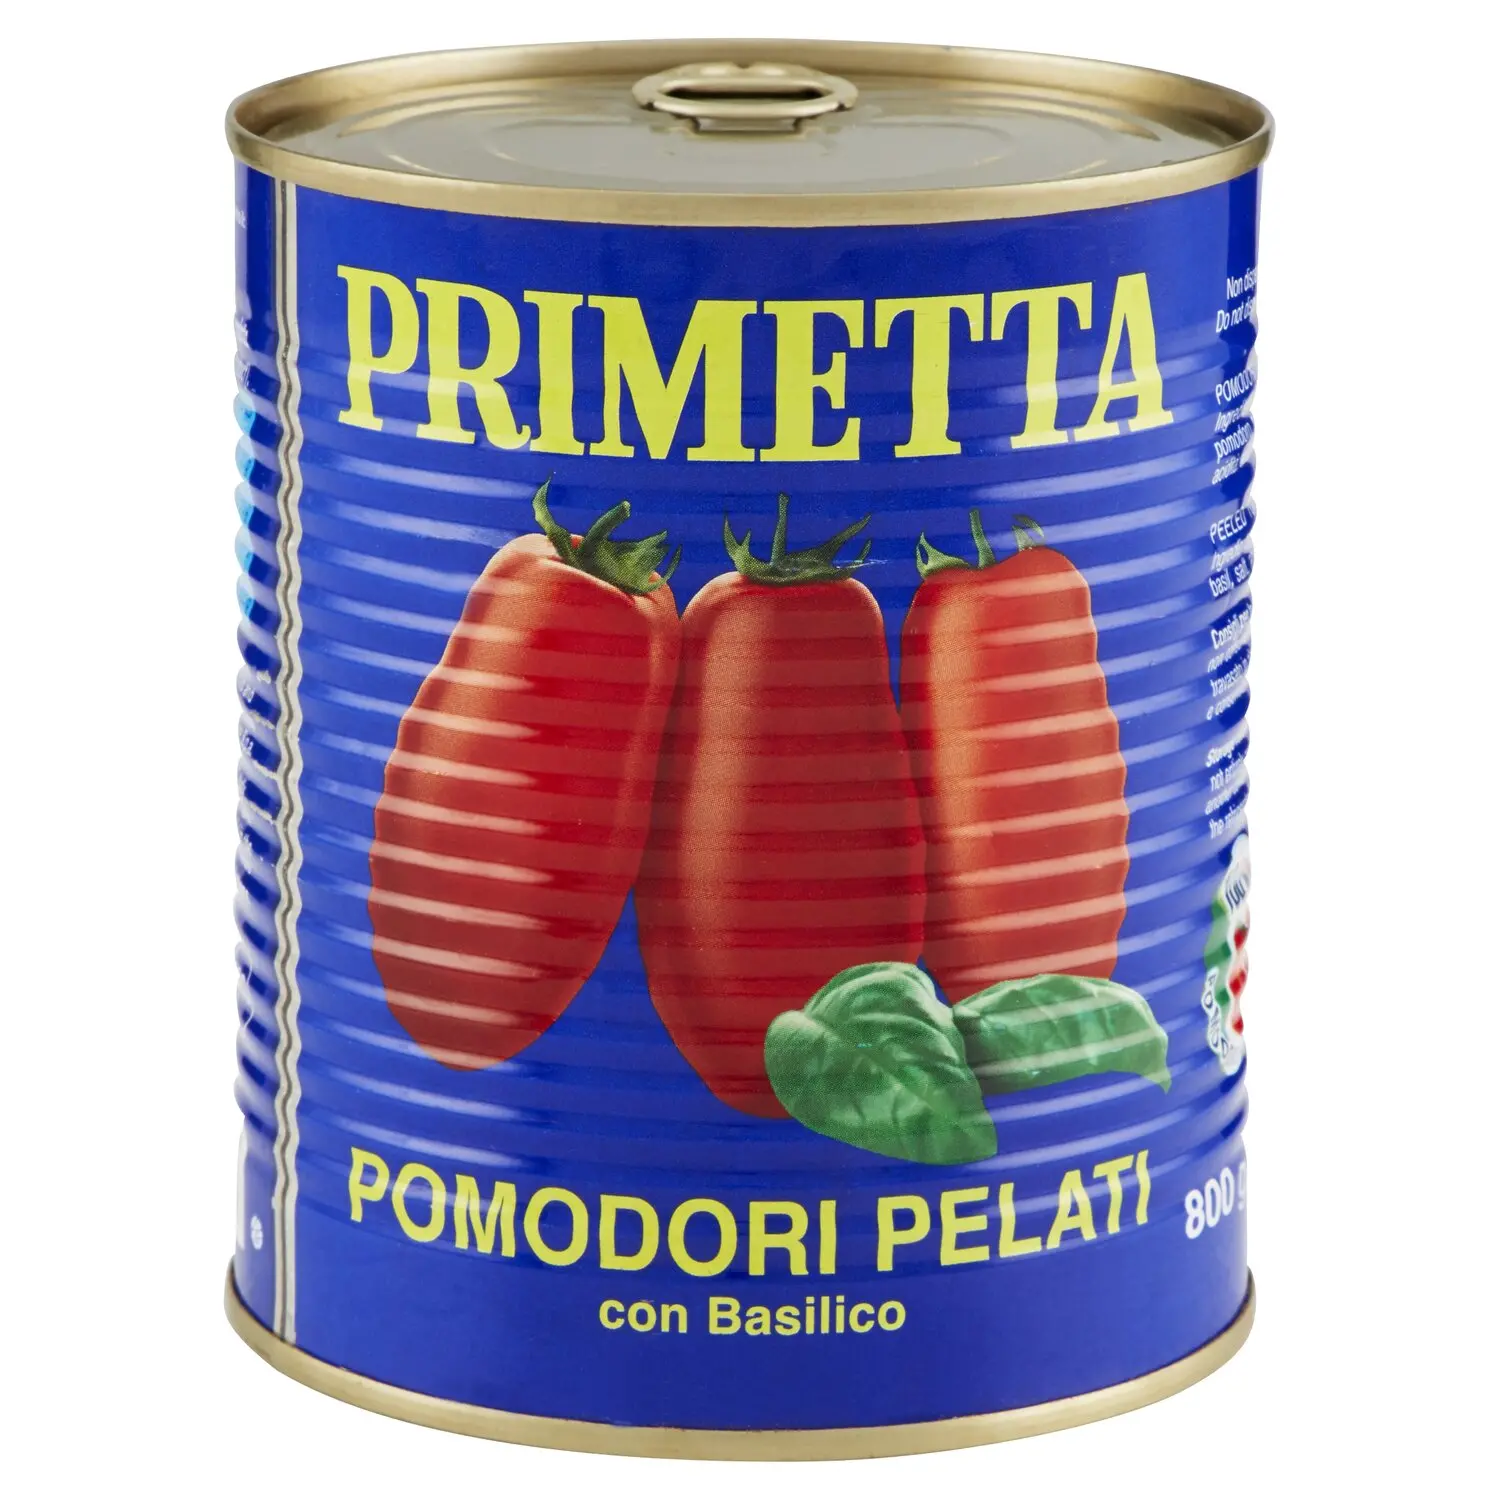 Primetta Pomodori Pelati con Basilico 800 g